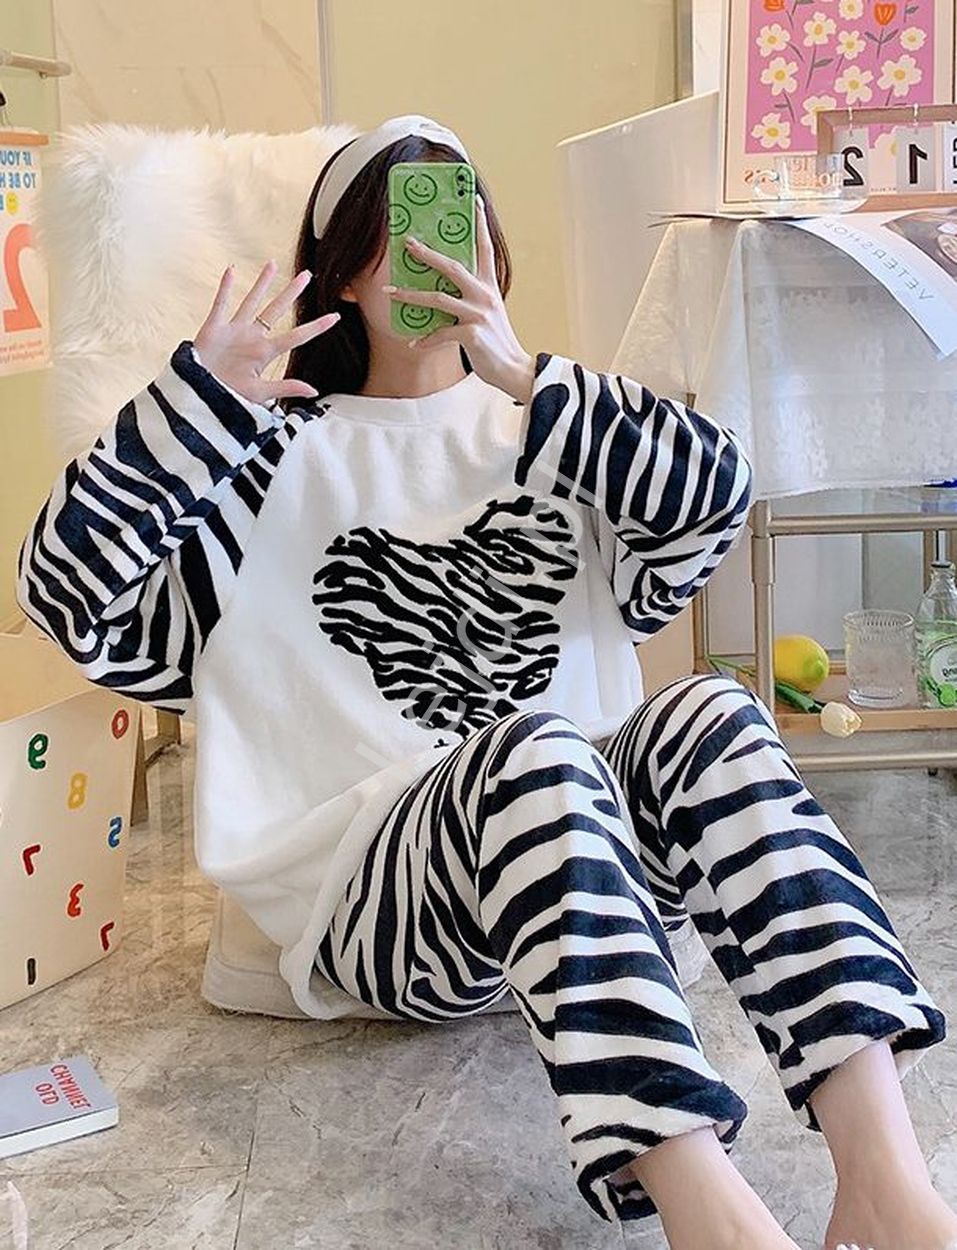 Biało czarna piżama zebra z sercem, ciepły dres domowy 